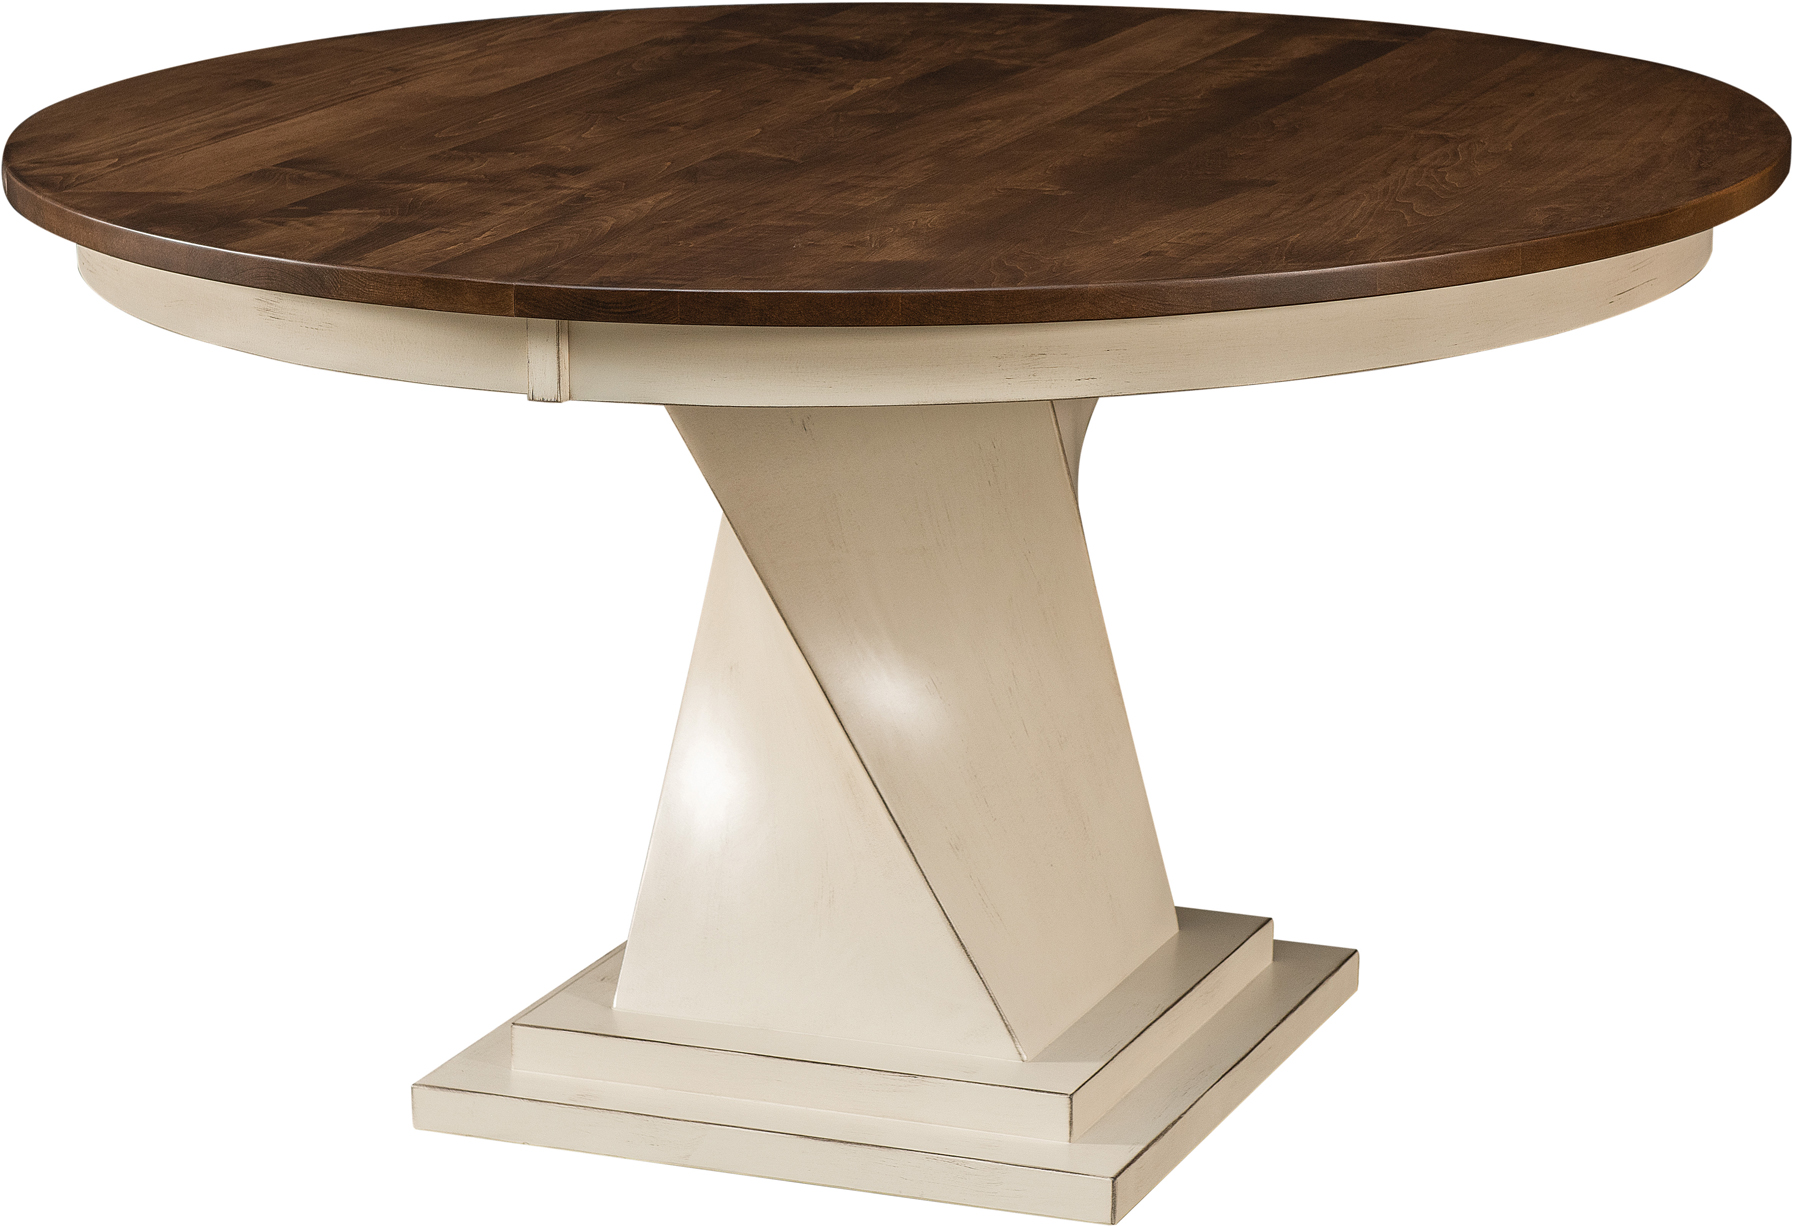 oak dining room pedestal table